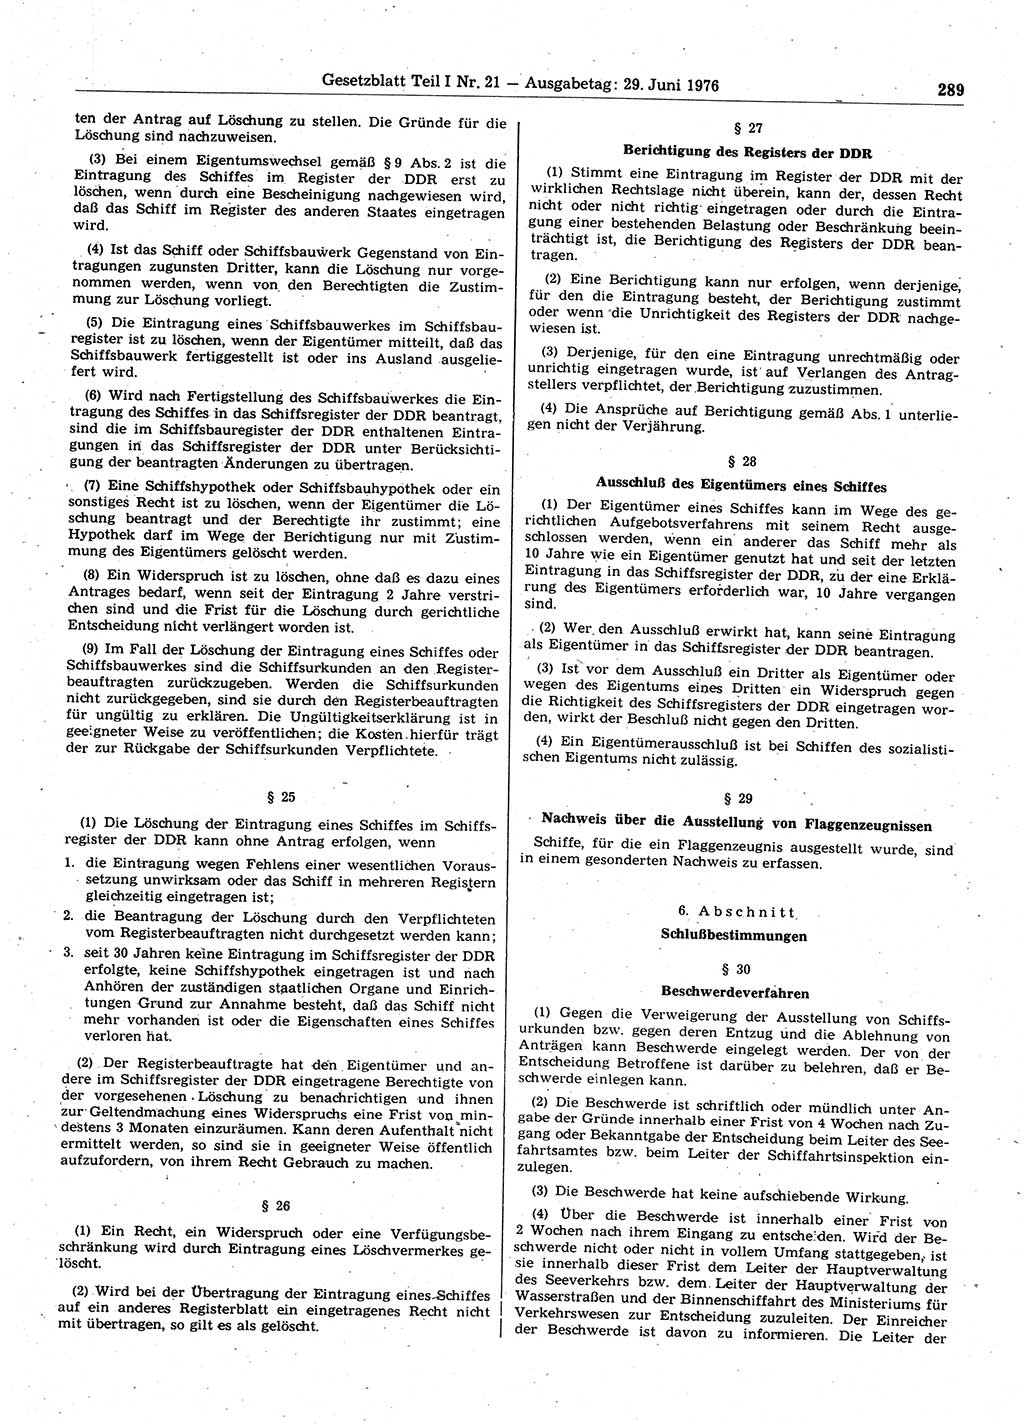 Gesetzblatt (GBl.) der Deutschen Demokratischen Republik (DDR) Teil Ⅰ 1976, Seite 289 (GBl. DDR Ⅰ 1976, S. 289)